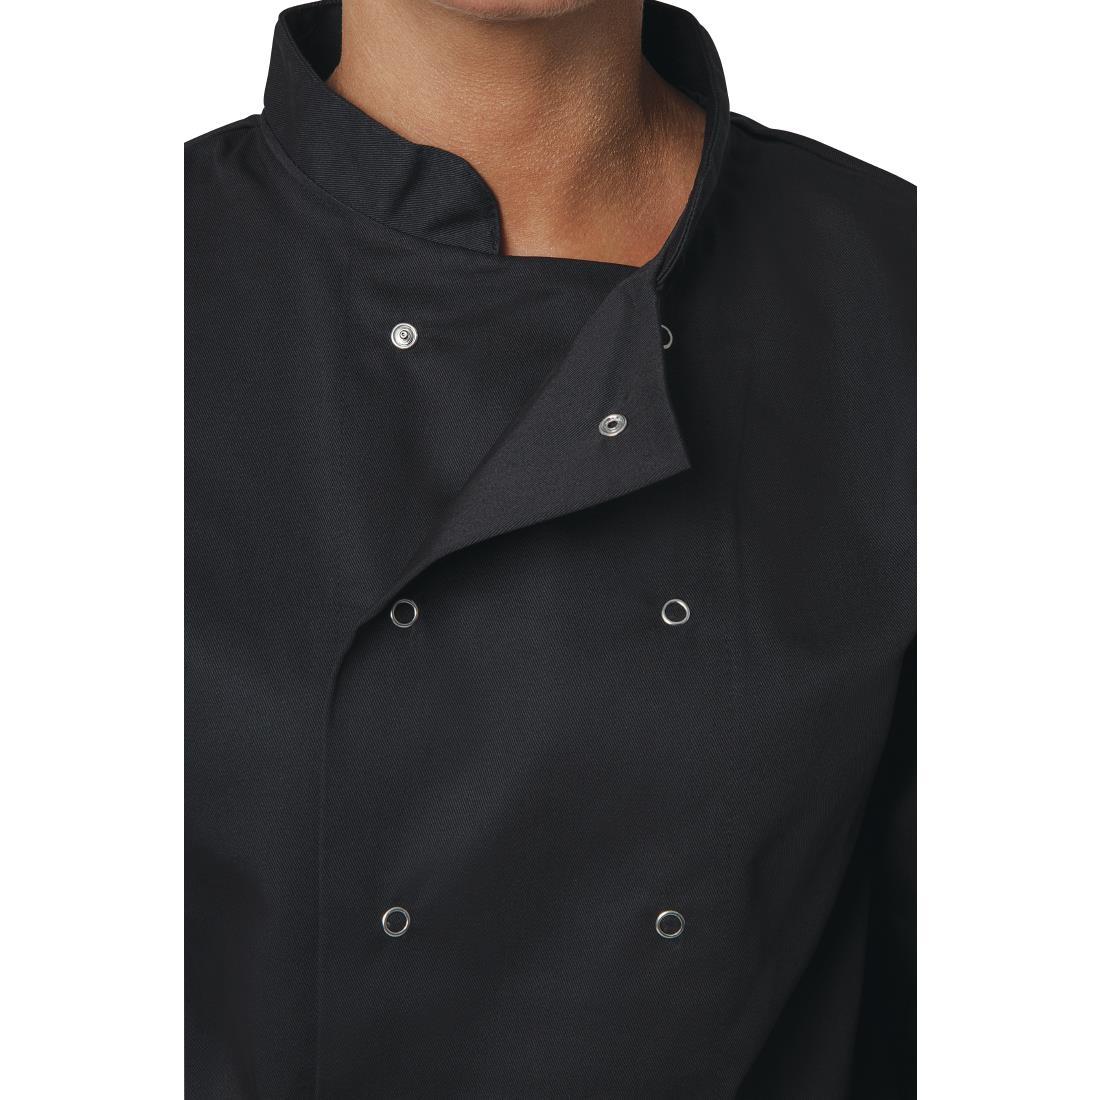 Whites Vegas Unisex Chefs Jacket Long Sleeve Black XL - A438-XL  - 4